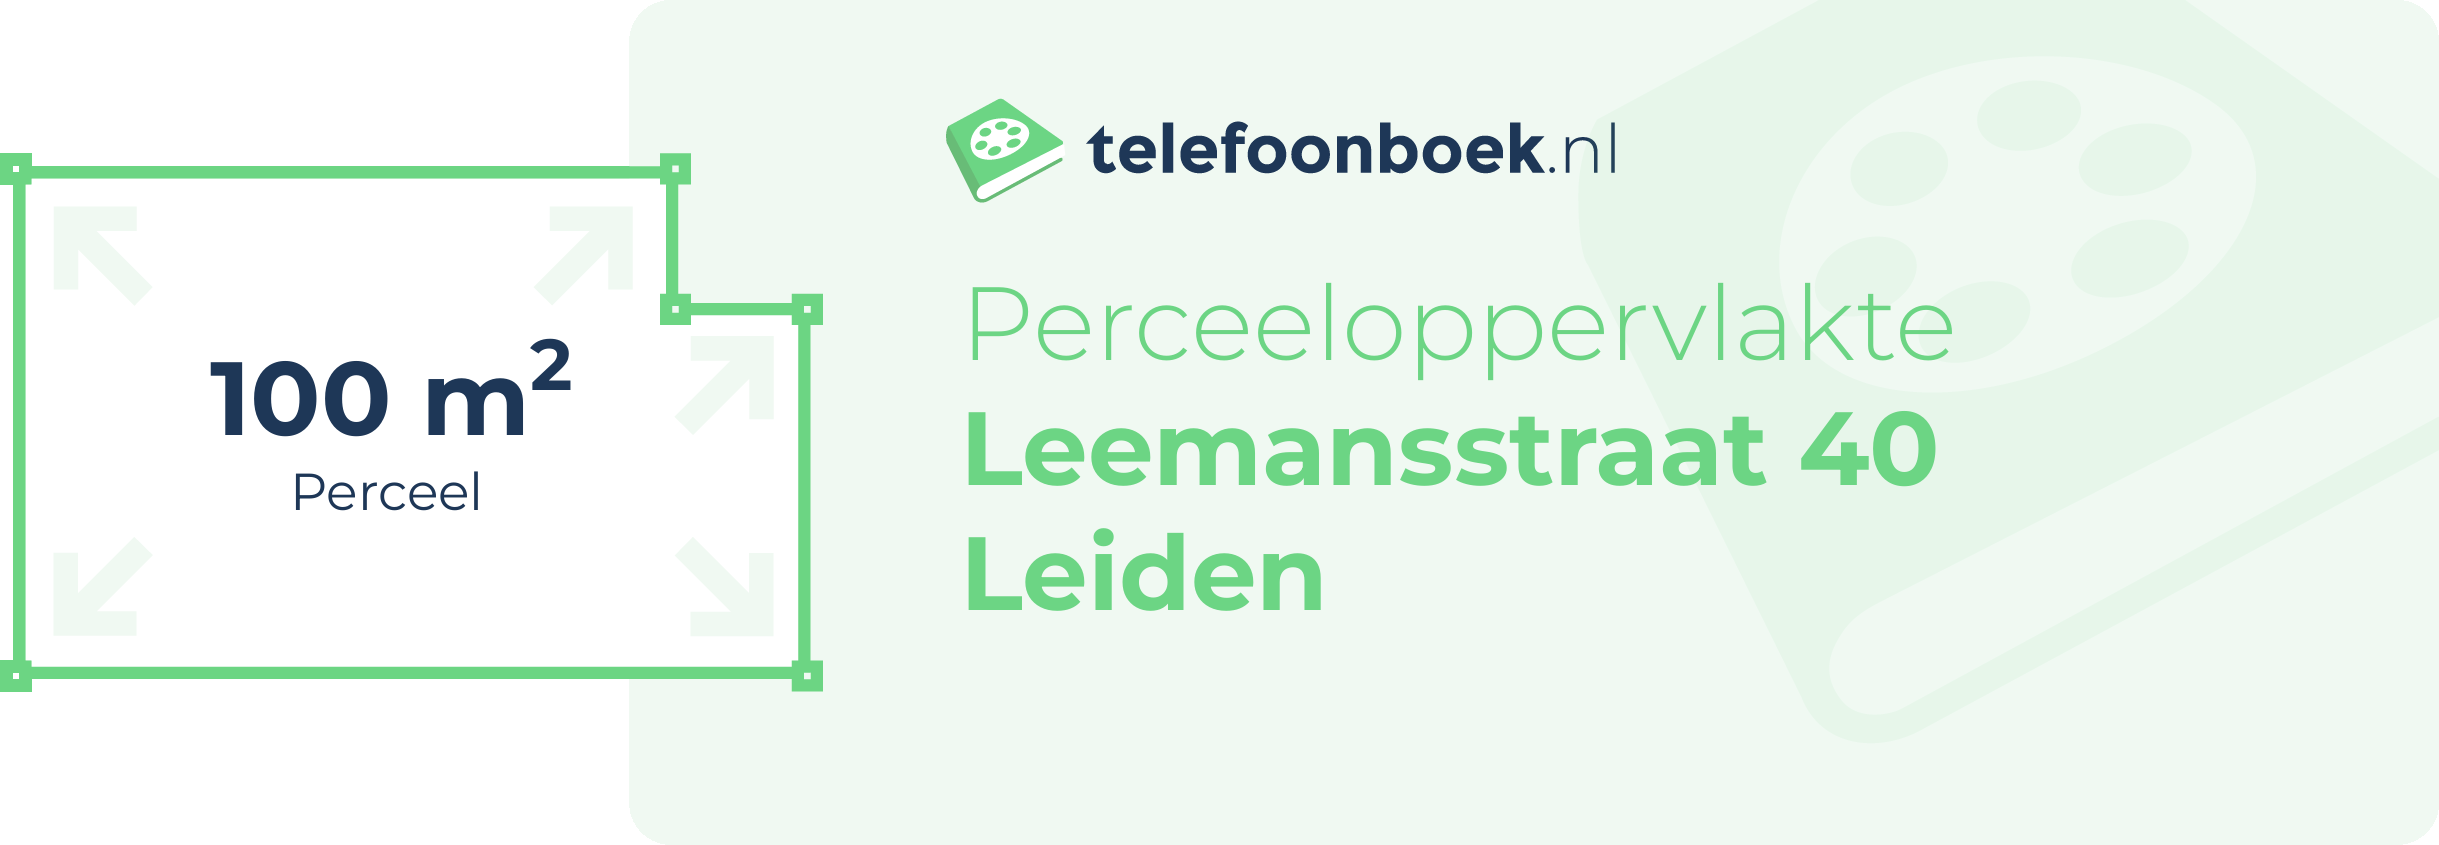 Perceeloppervlakte Leemansstraat 40 Leiden